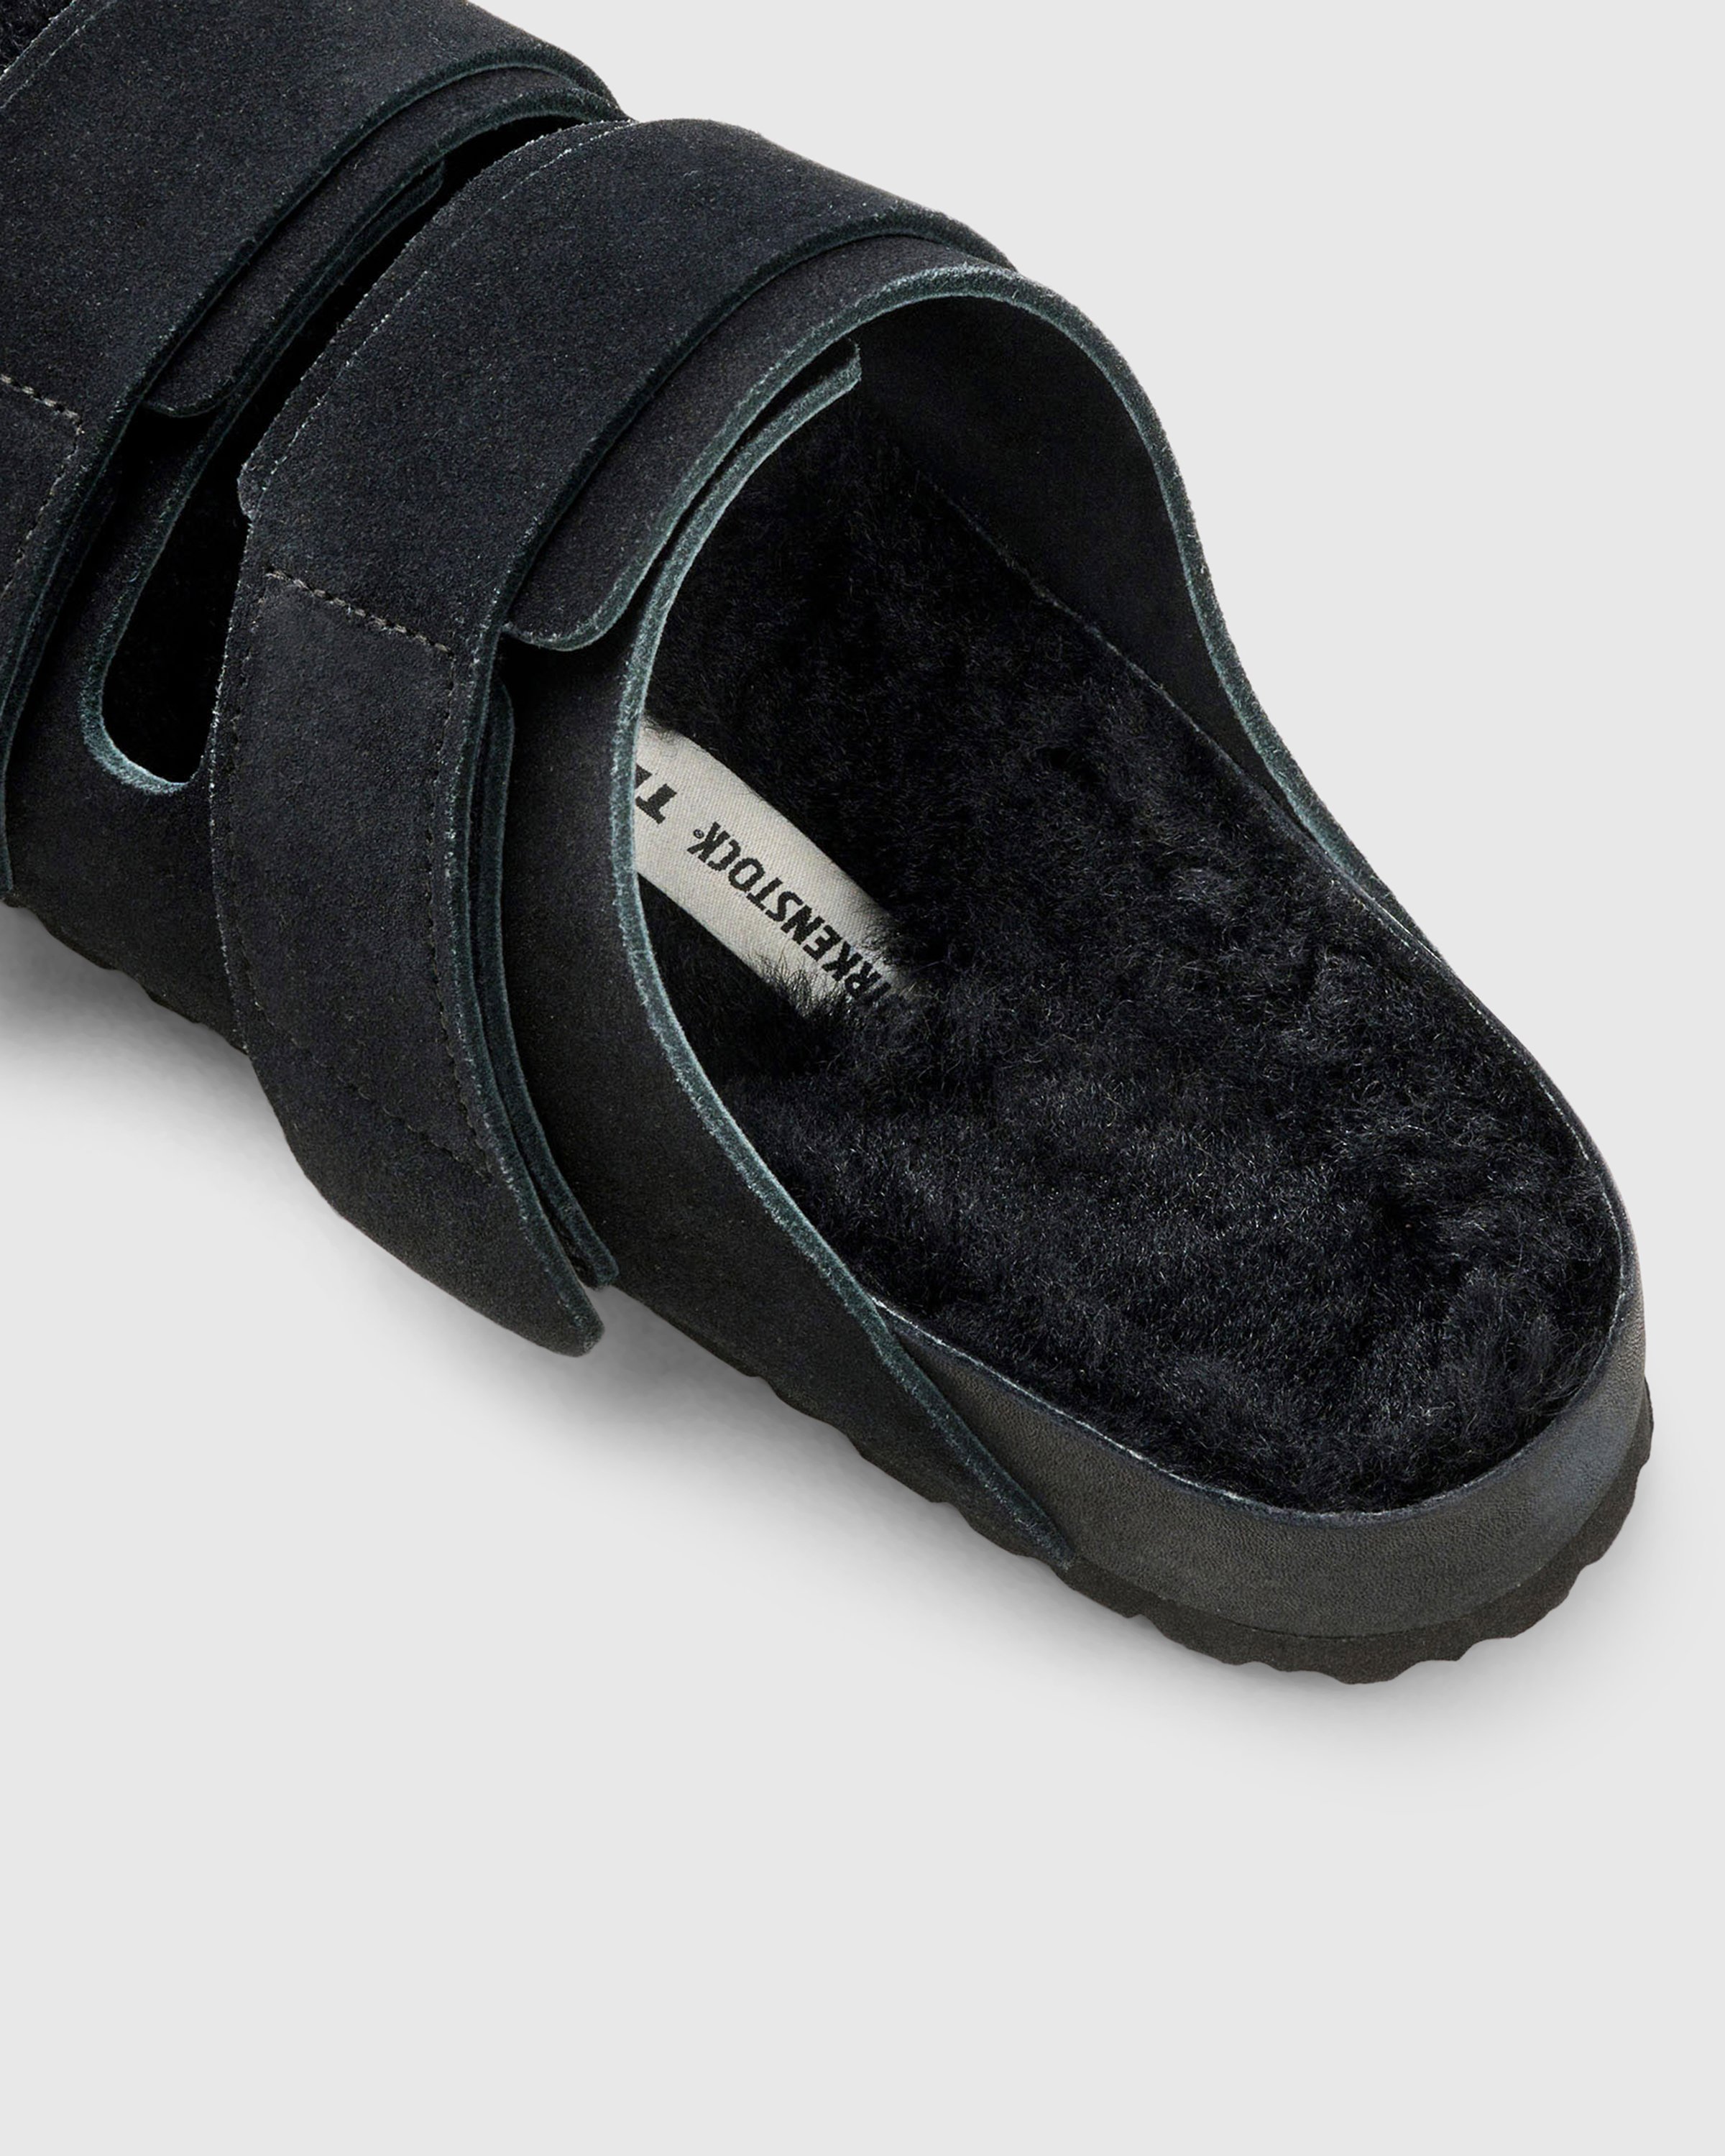 Birkenstock x Tekla - Shearling Uji Slate/Black - Footwear - Black - Image 4